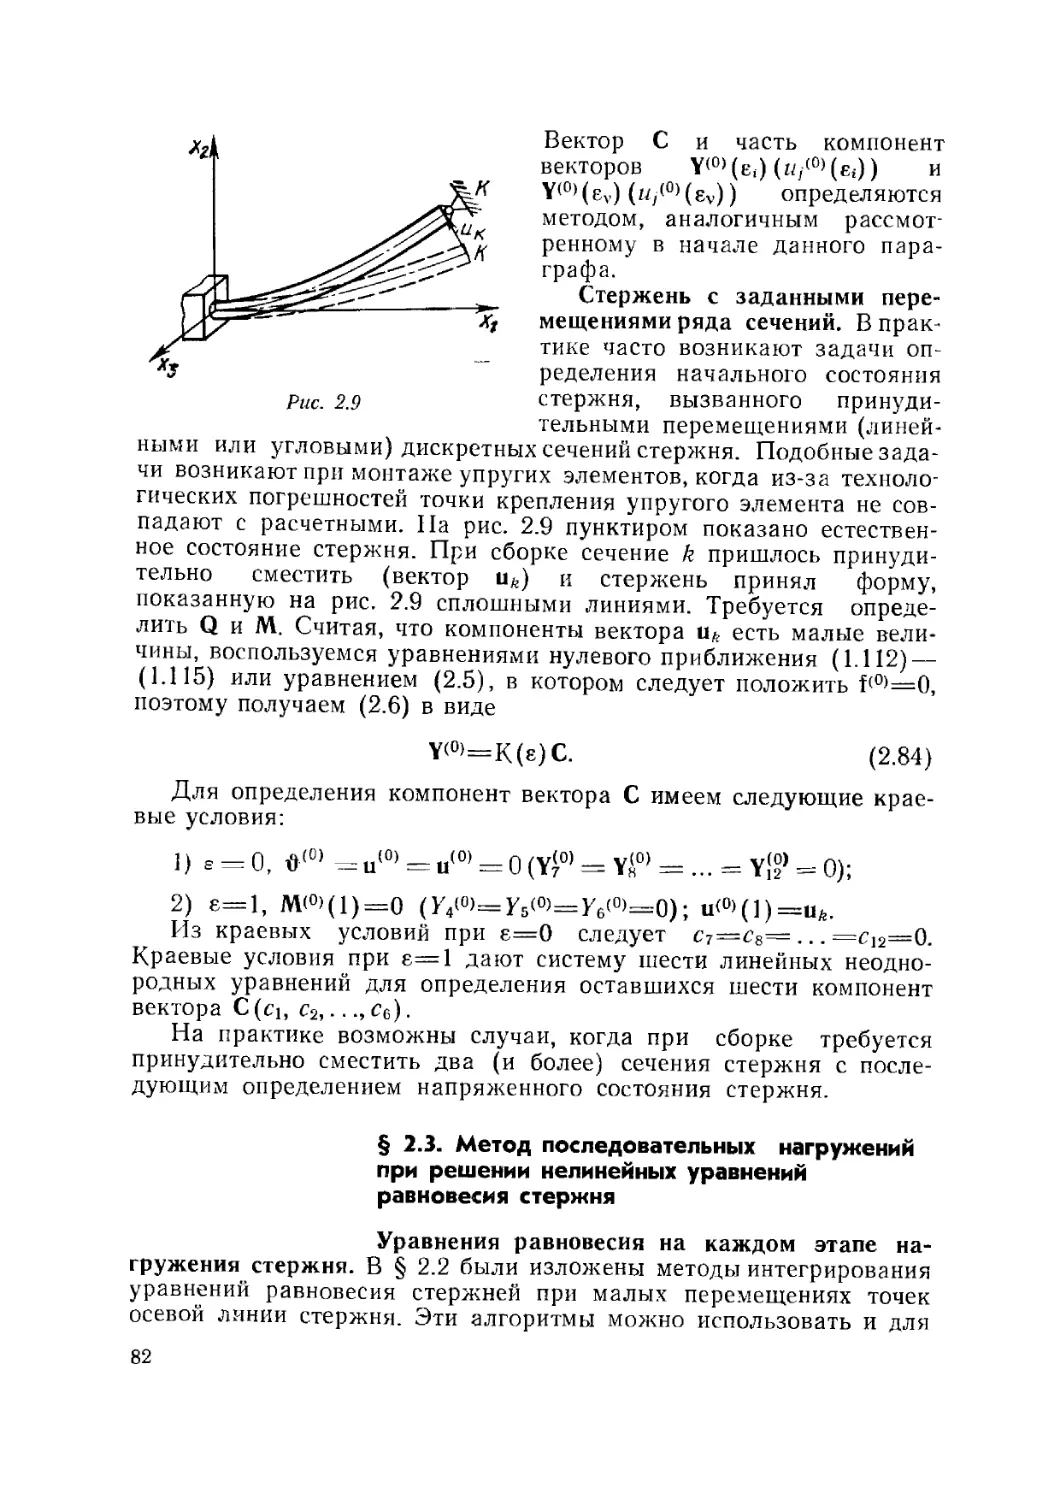 § 2.3. Метод последовательных нагружений при решении нелинейных уравнений равновесия стержня